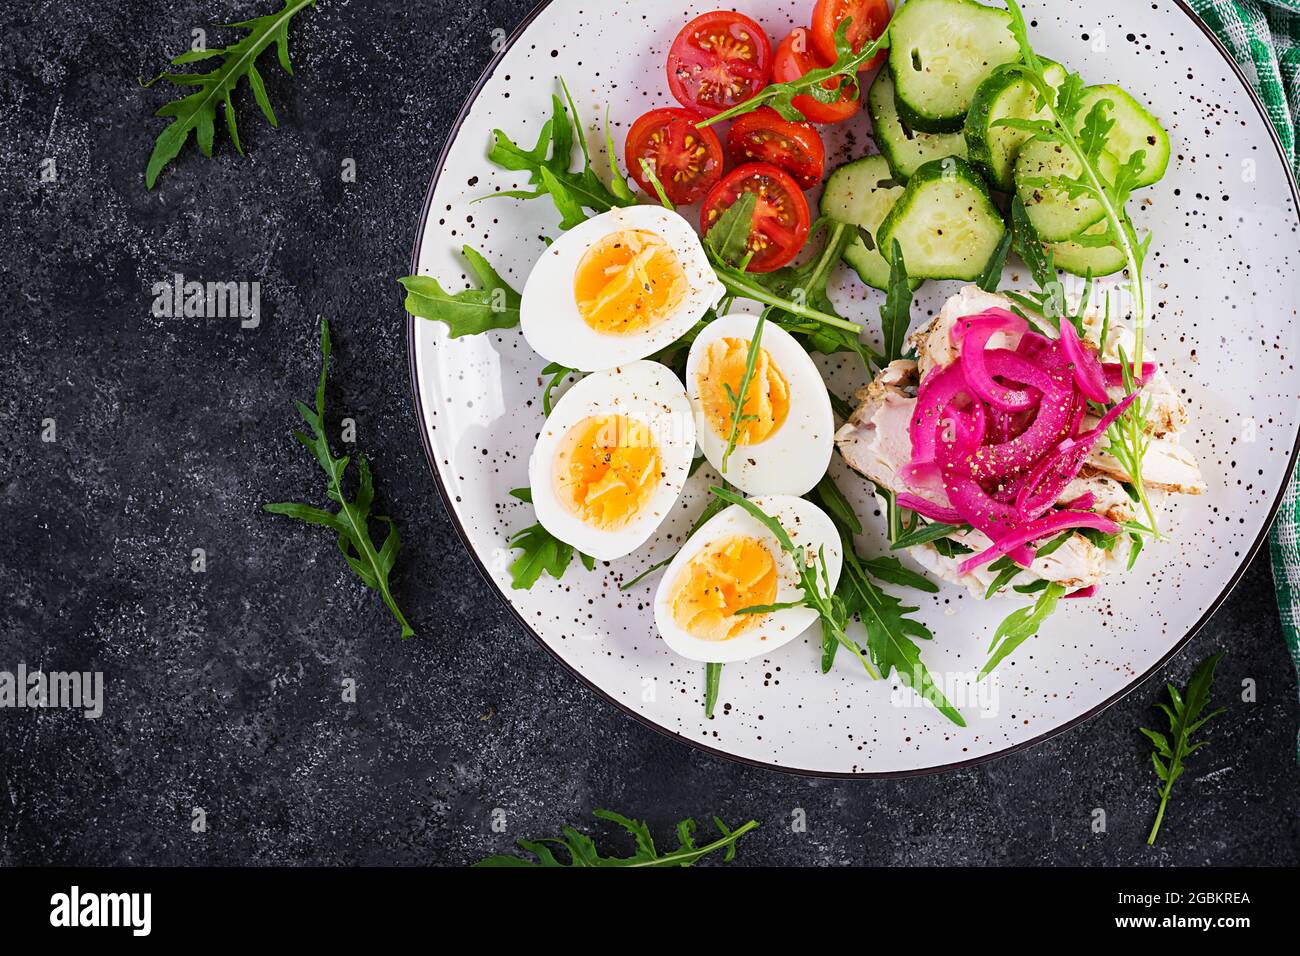 Cómo Cocinar Huevos Duros Perfectos - Recetas Saludables - Colsalud